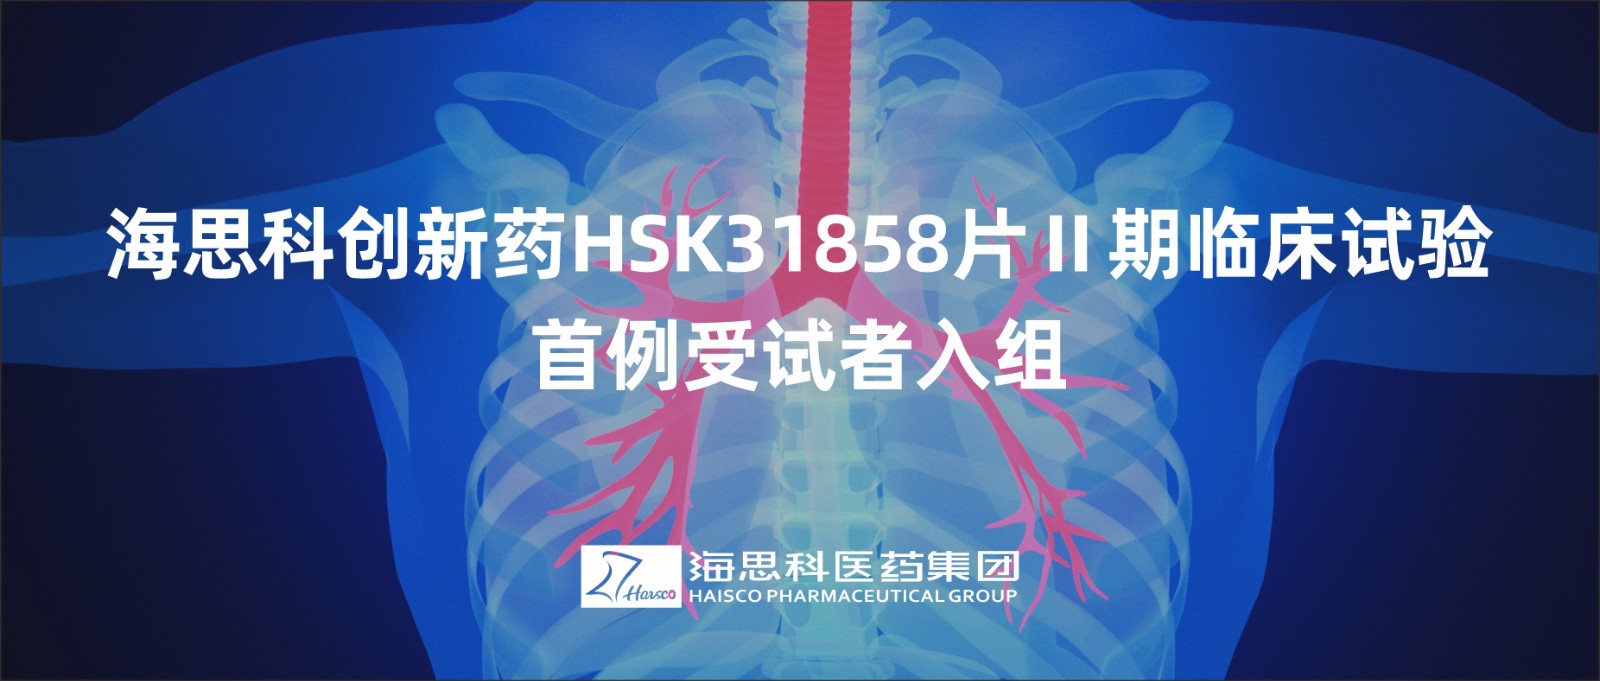 2138太阳诚娱乐官网创新药HSK31858片Ⅱ期临床试验首例受试者入组